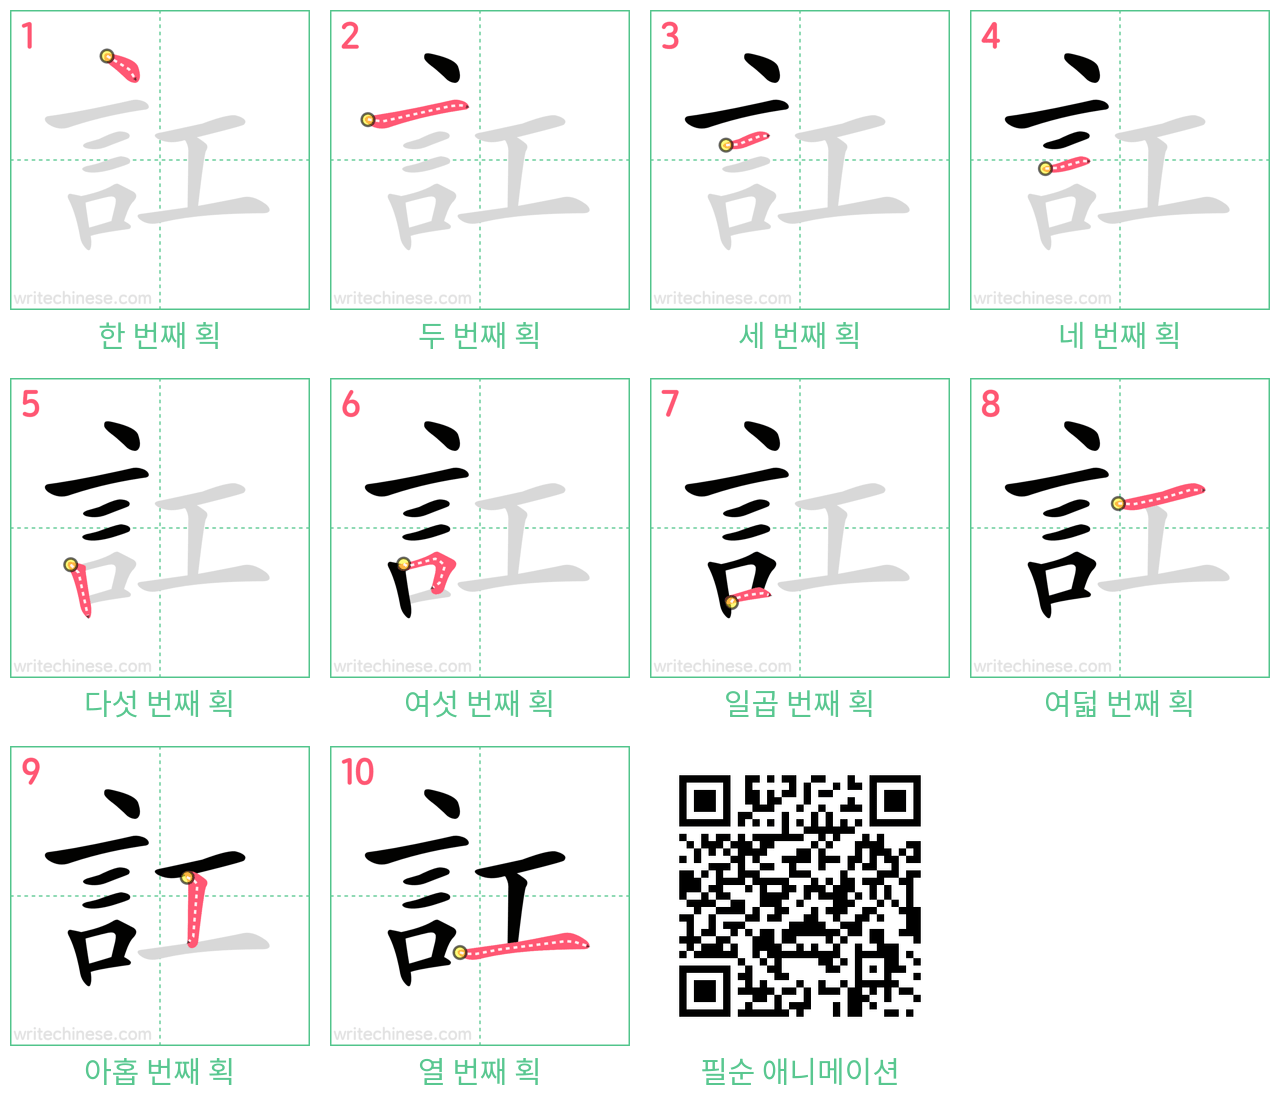 訌 step-by-step stroke order diagrams